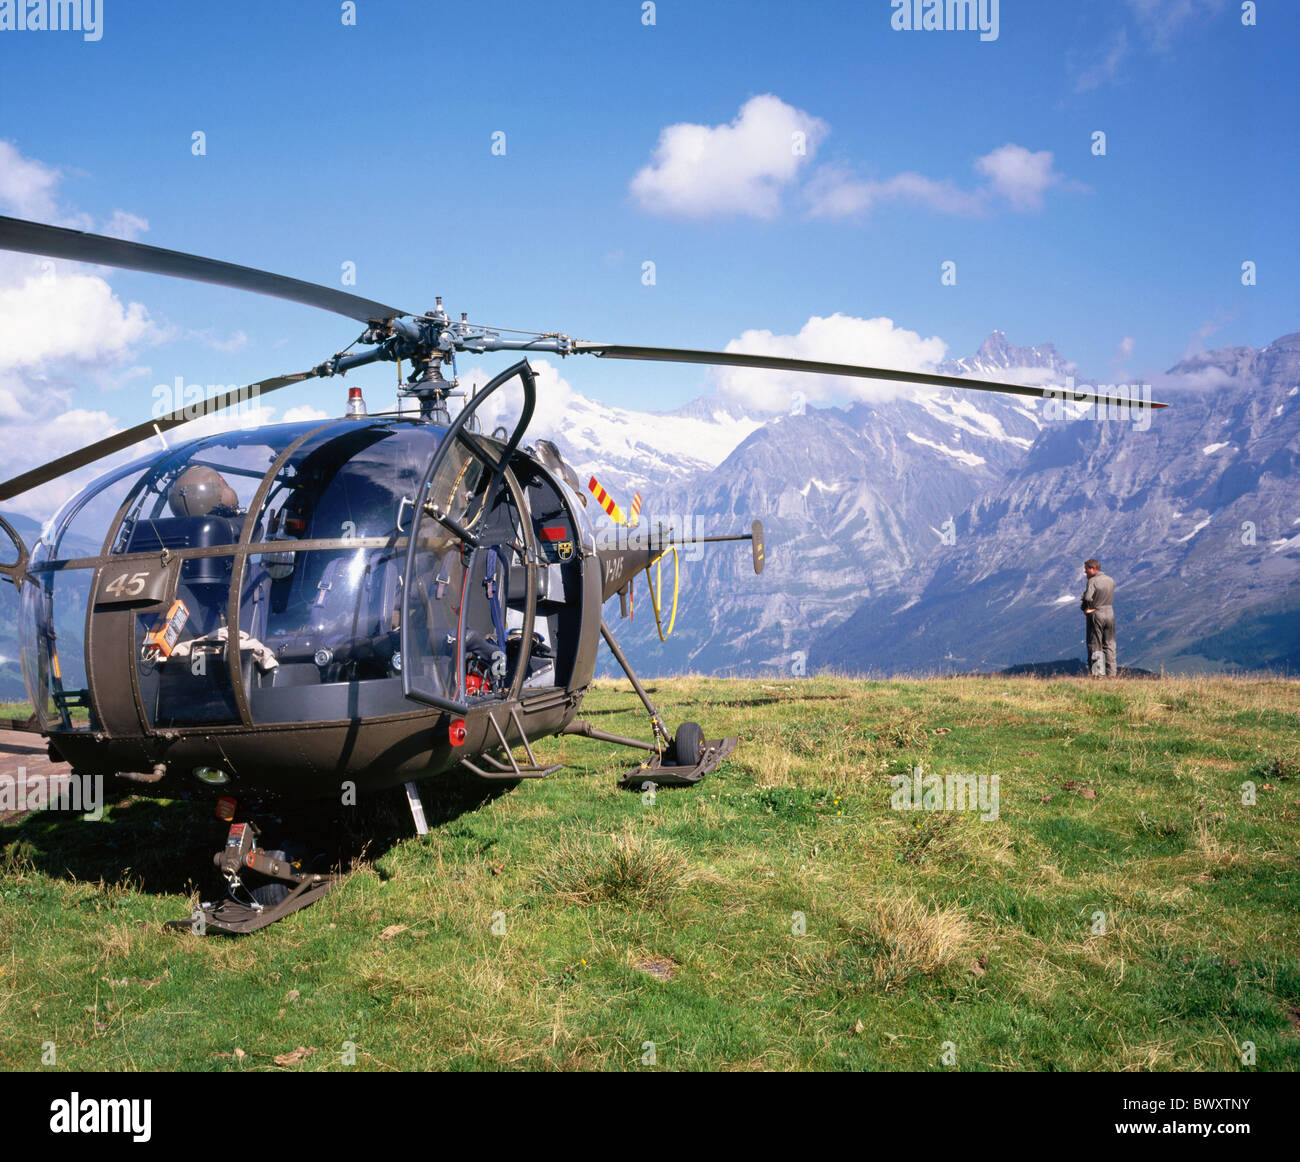 Alp hélicoptère de l'armée militaire d'hélicoptères panorama de montagne Suisse Europe Alouette soldat Banque D'Images